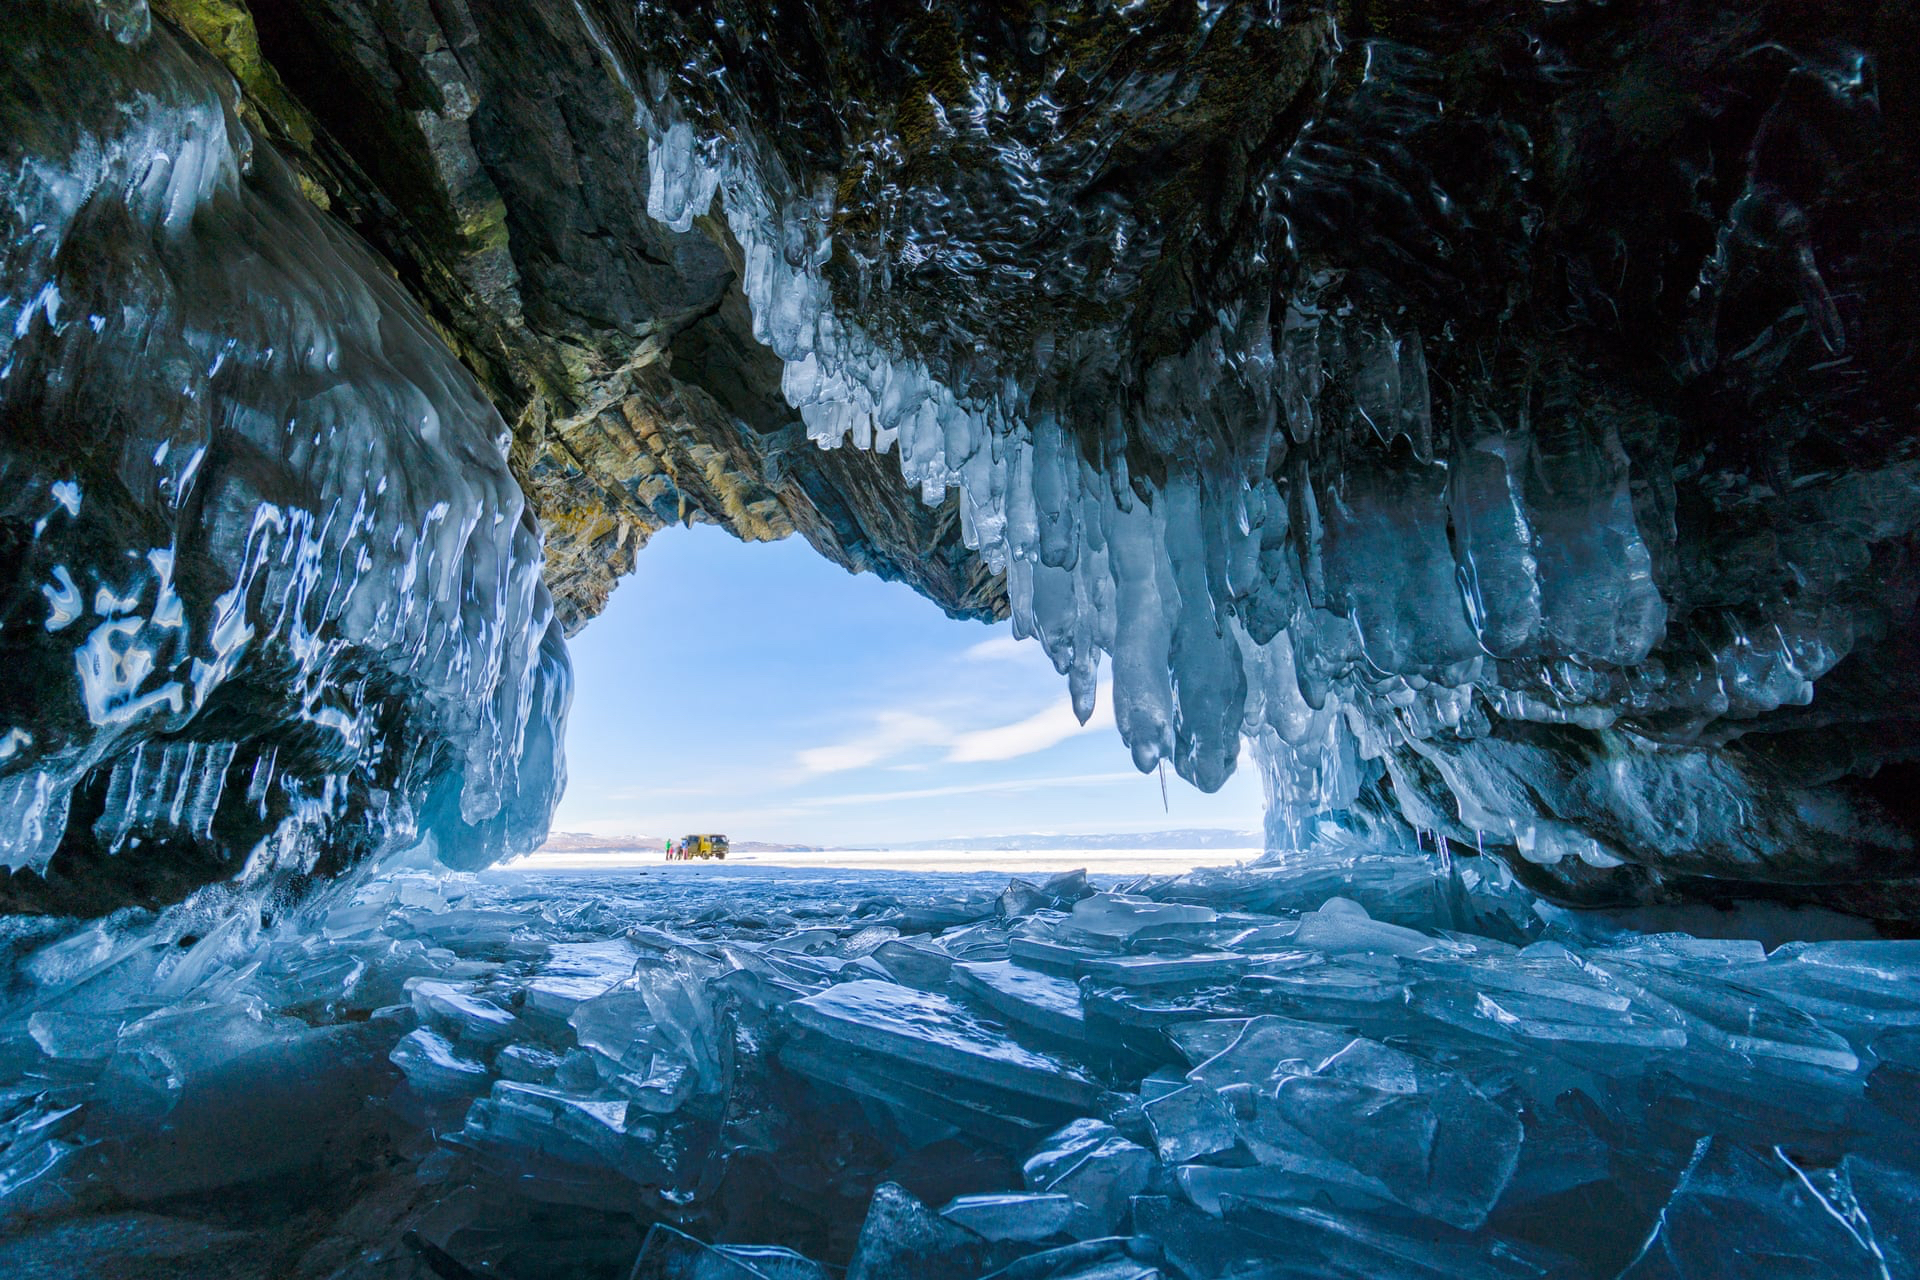 Ледяная пещера на Байкале, Россия. Фото:&nbsp;Сабрина Индербици.&nbsp;Победитель в категории &laquo;Люди и природа&raquo;